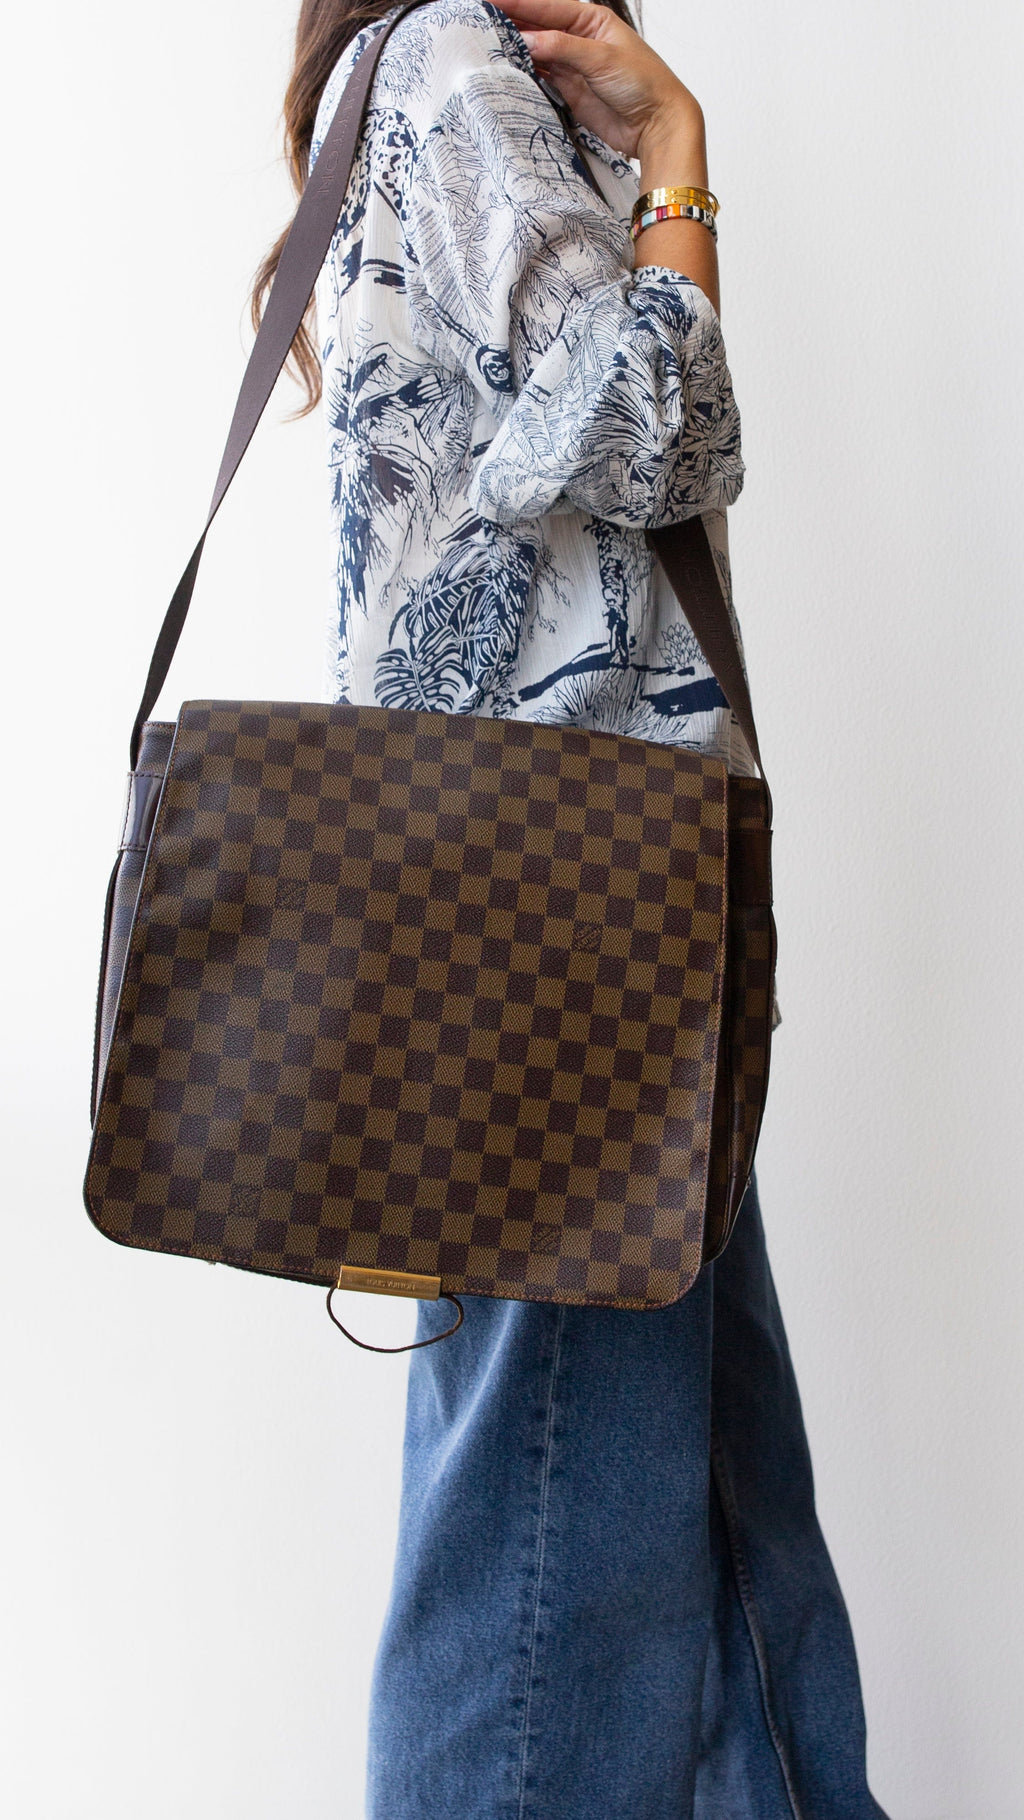 Louis Vuitton - 7DW Damier Graphite Laptop Bag